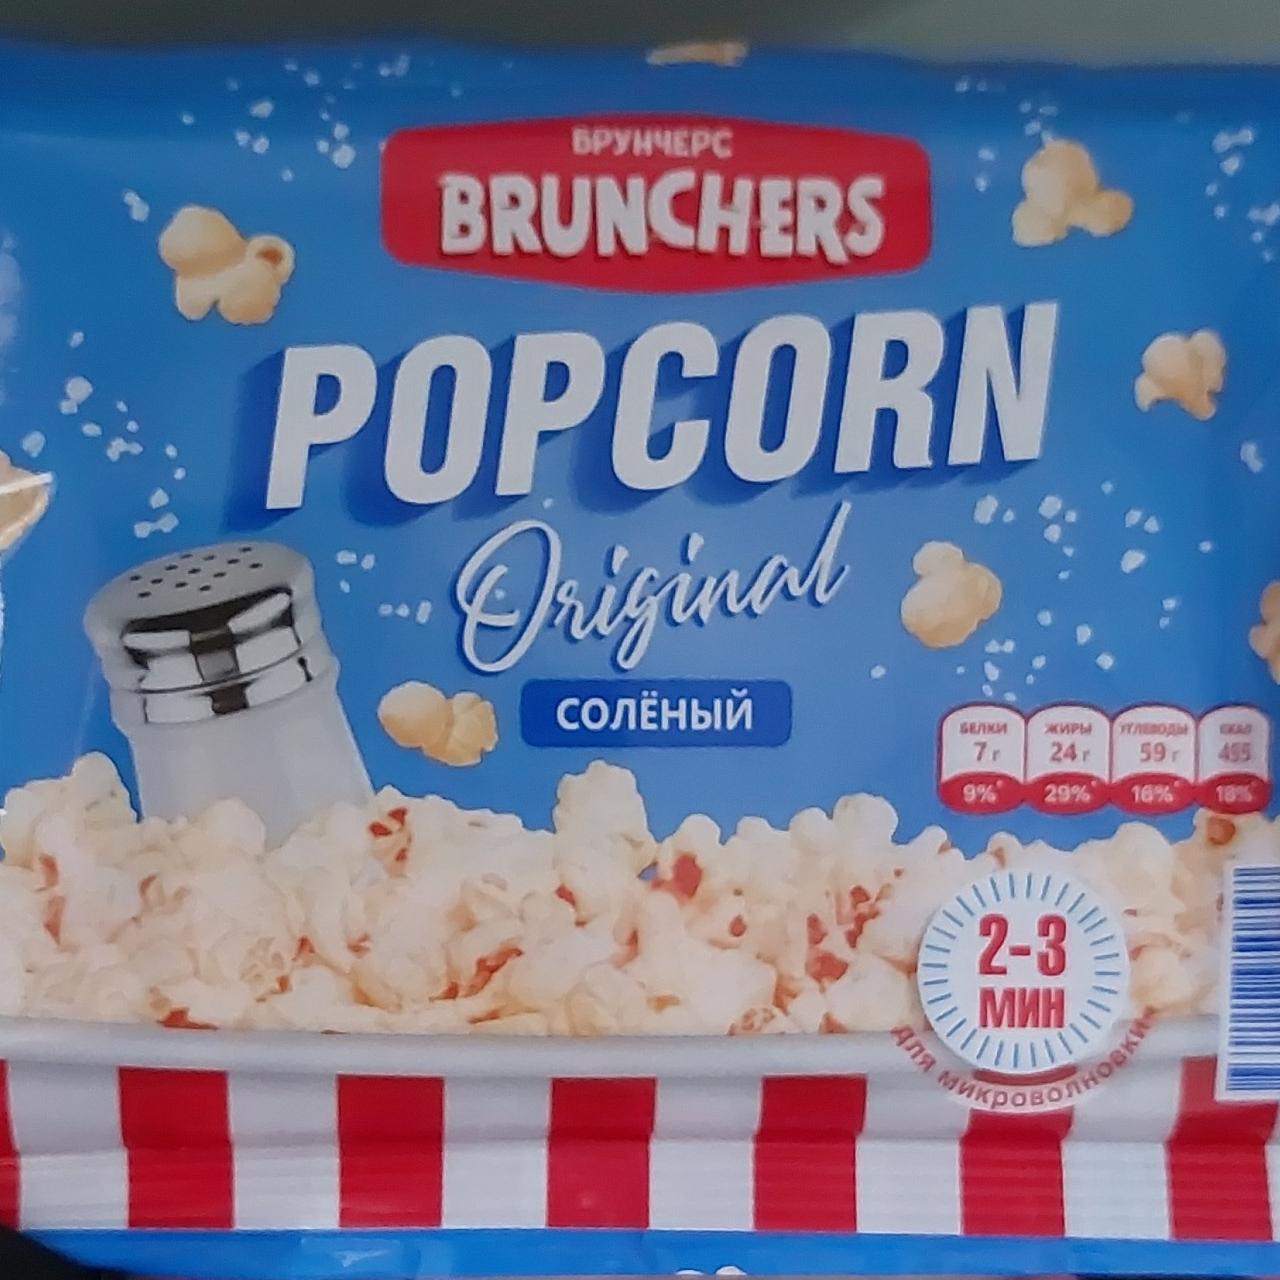 Фото - Popcorn original солёный Brunchers